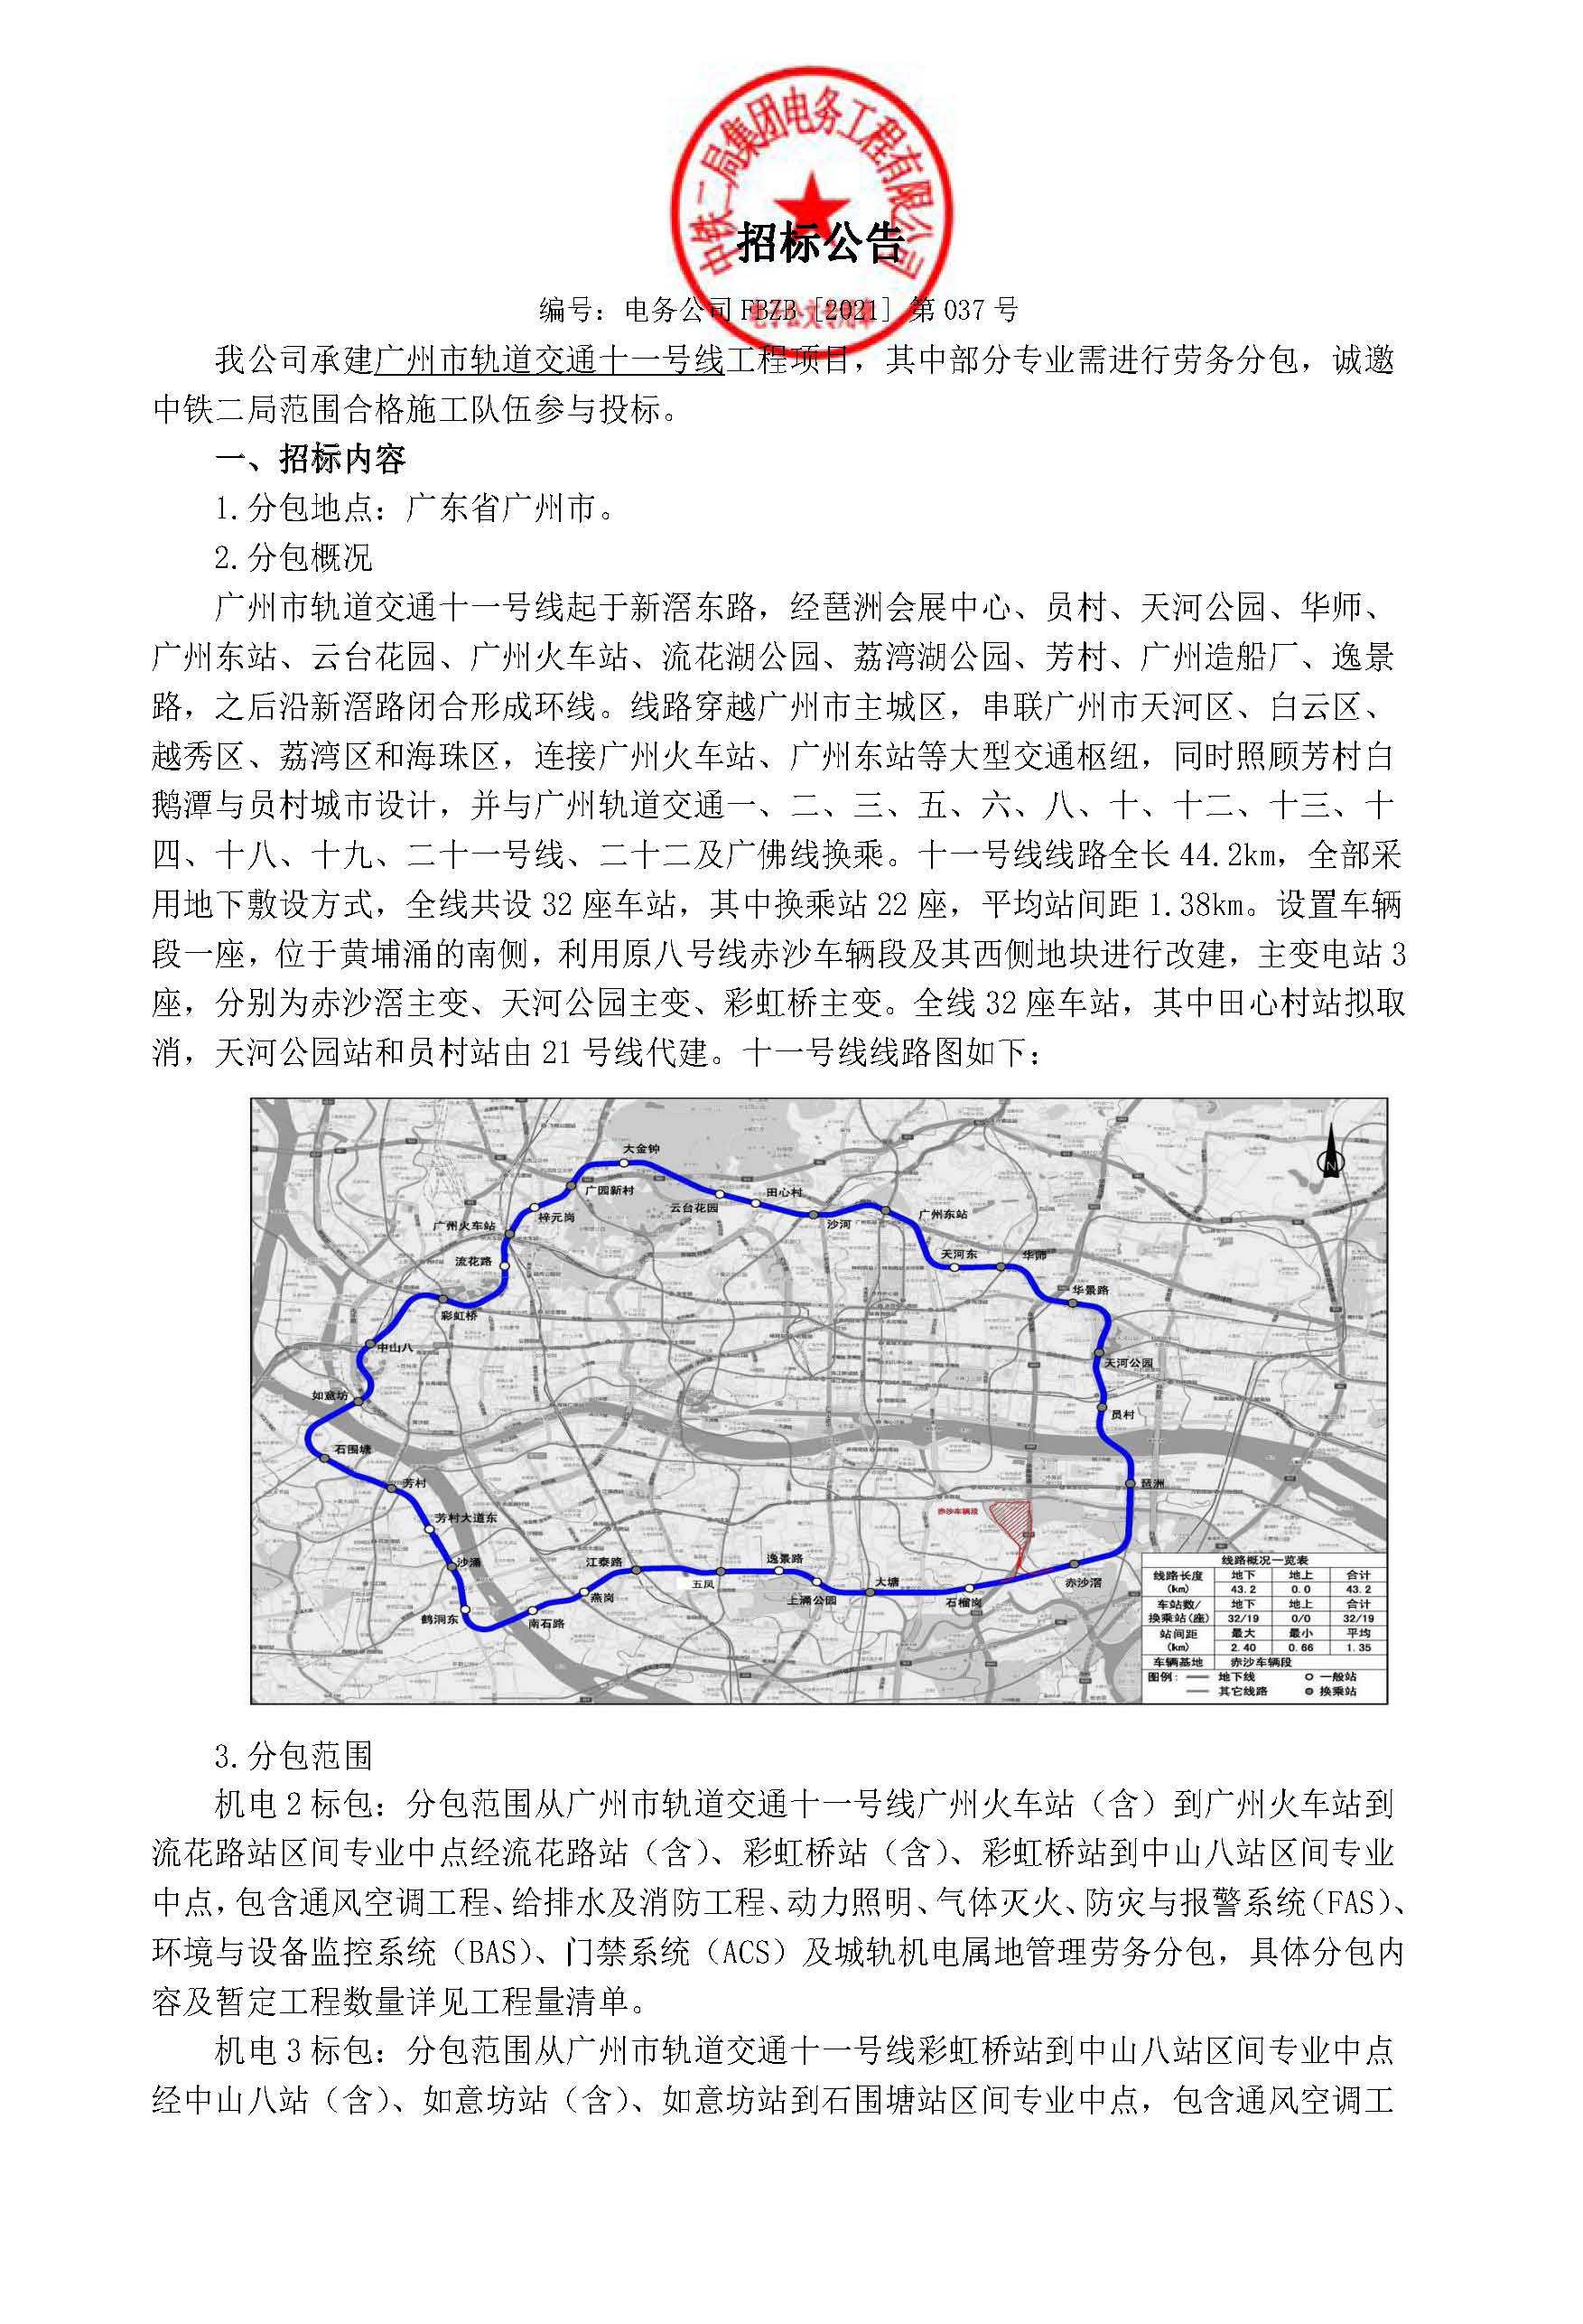 【招标公告】广州轨道交通十一号线工程项目_页面_1.jpg